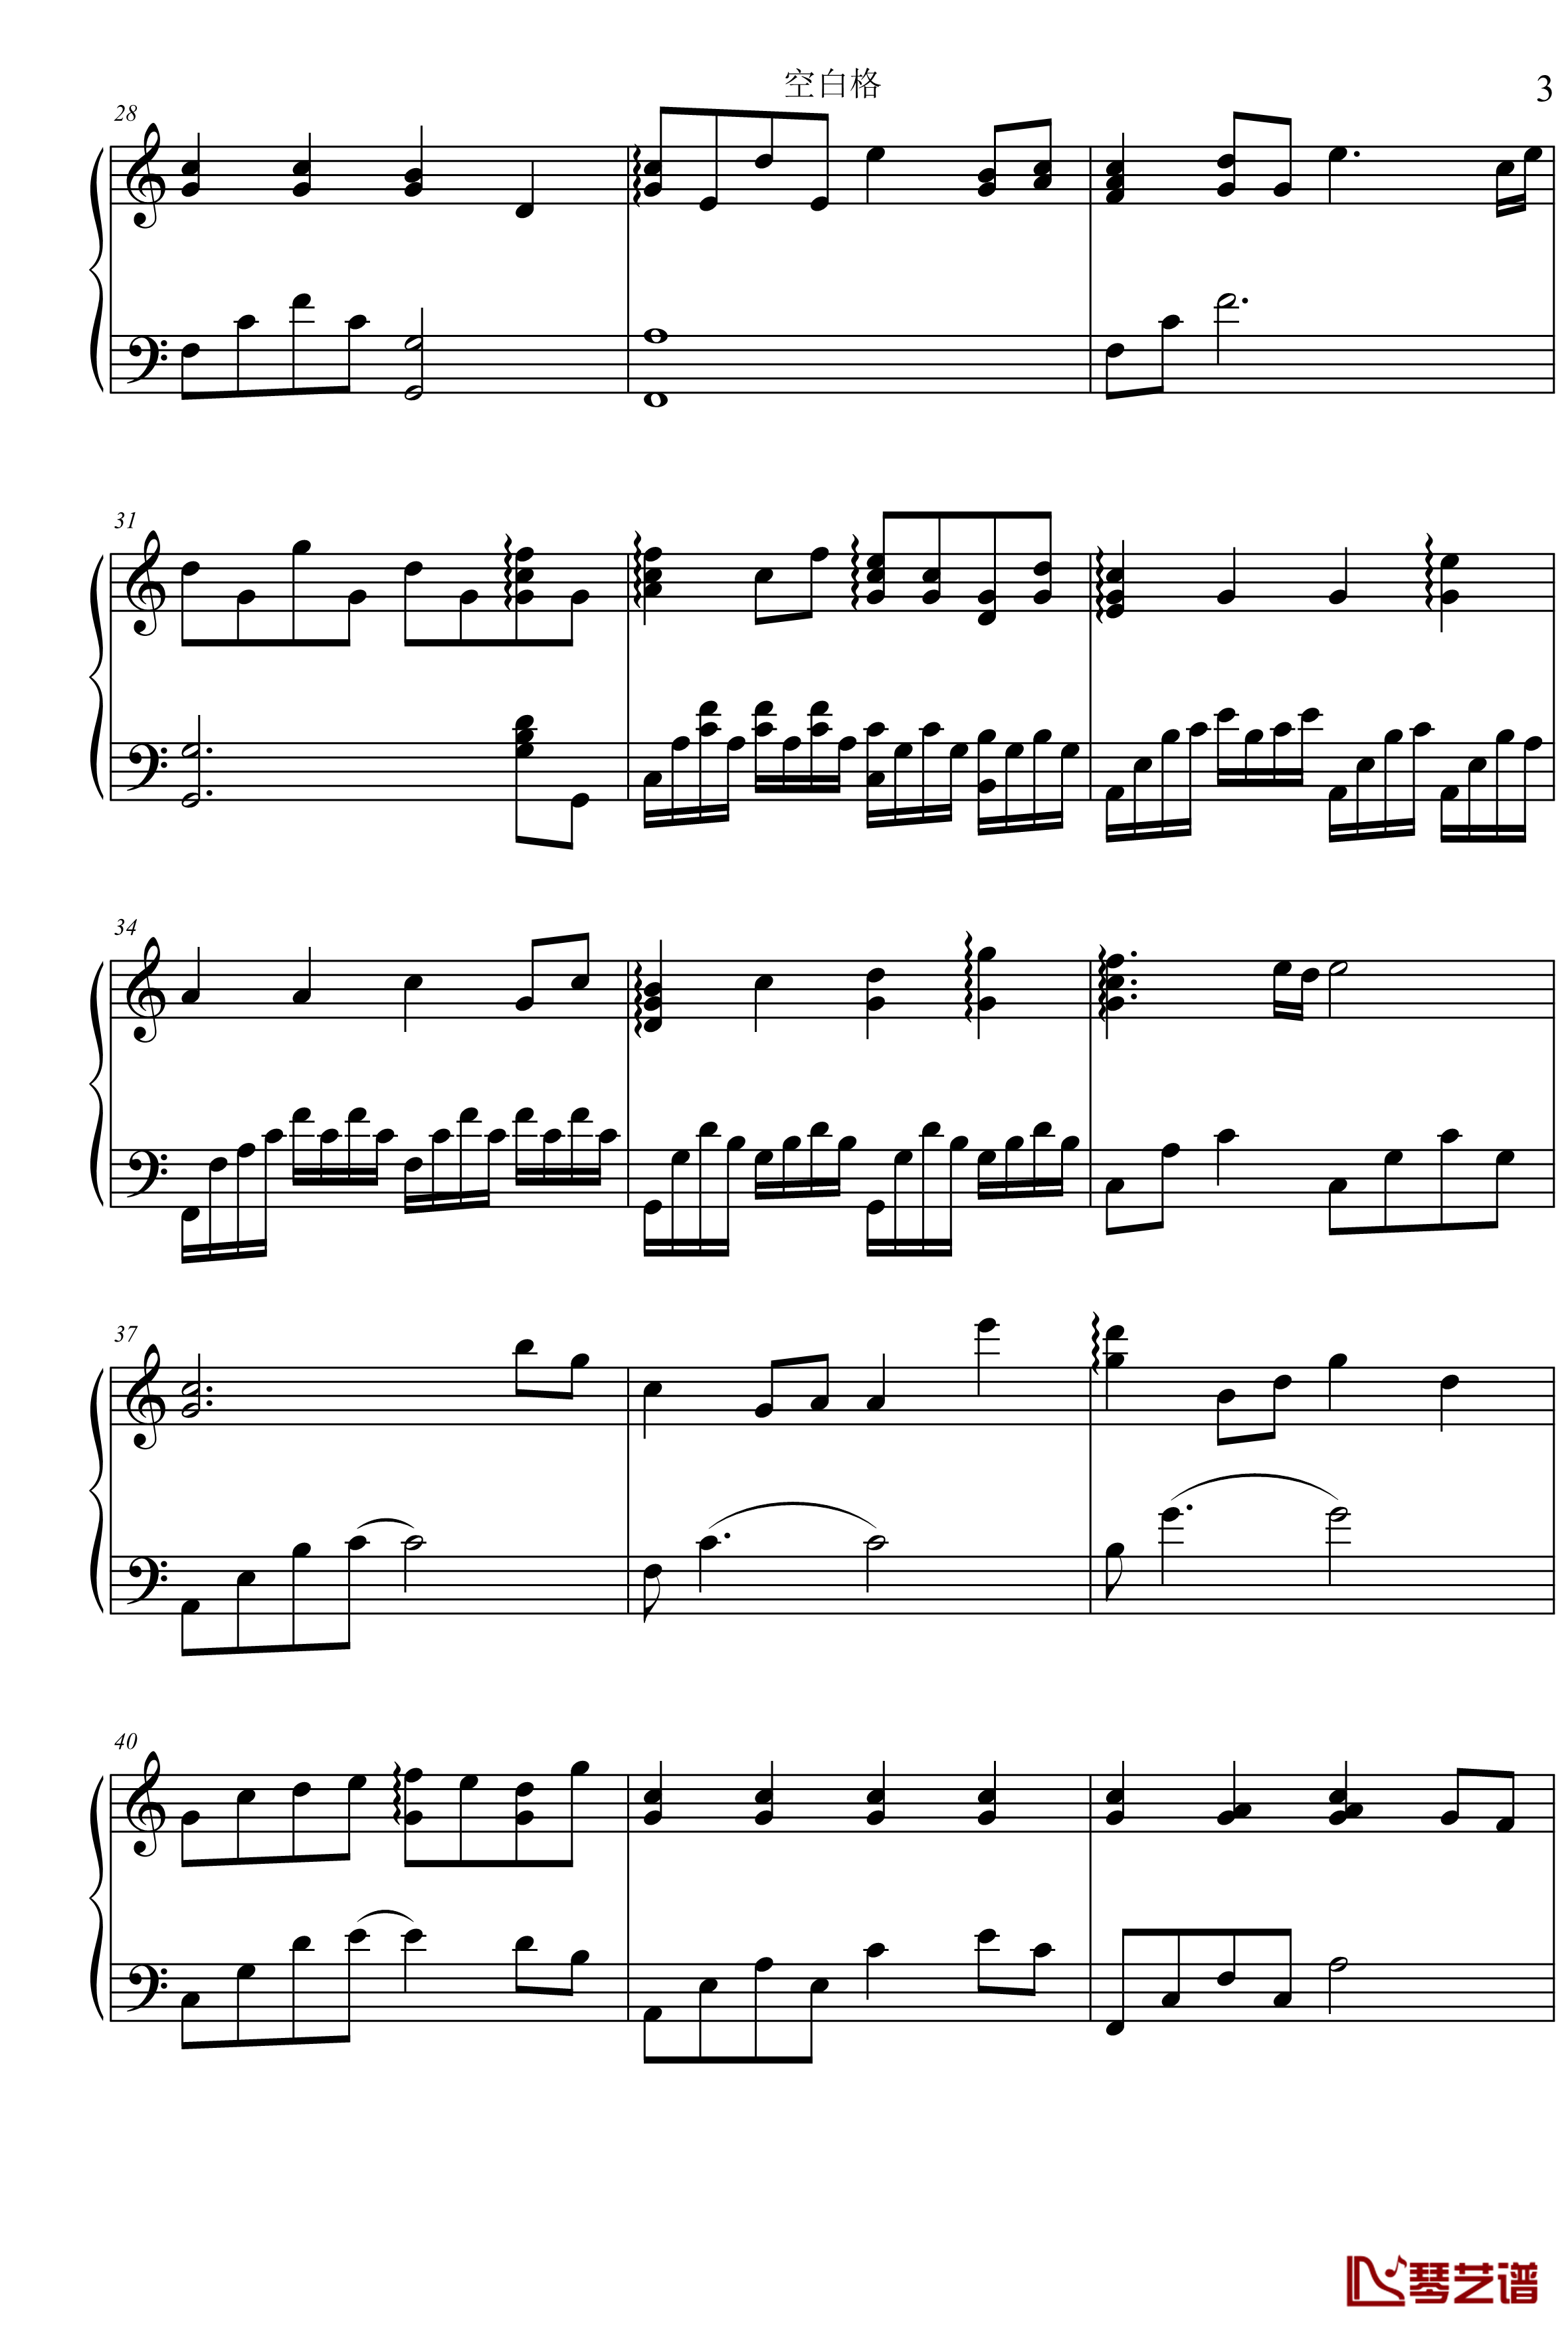 空白格钢琴谱-C调版本-蔡健雅3